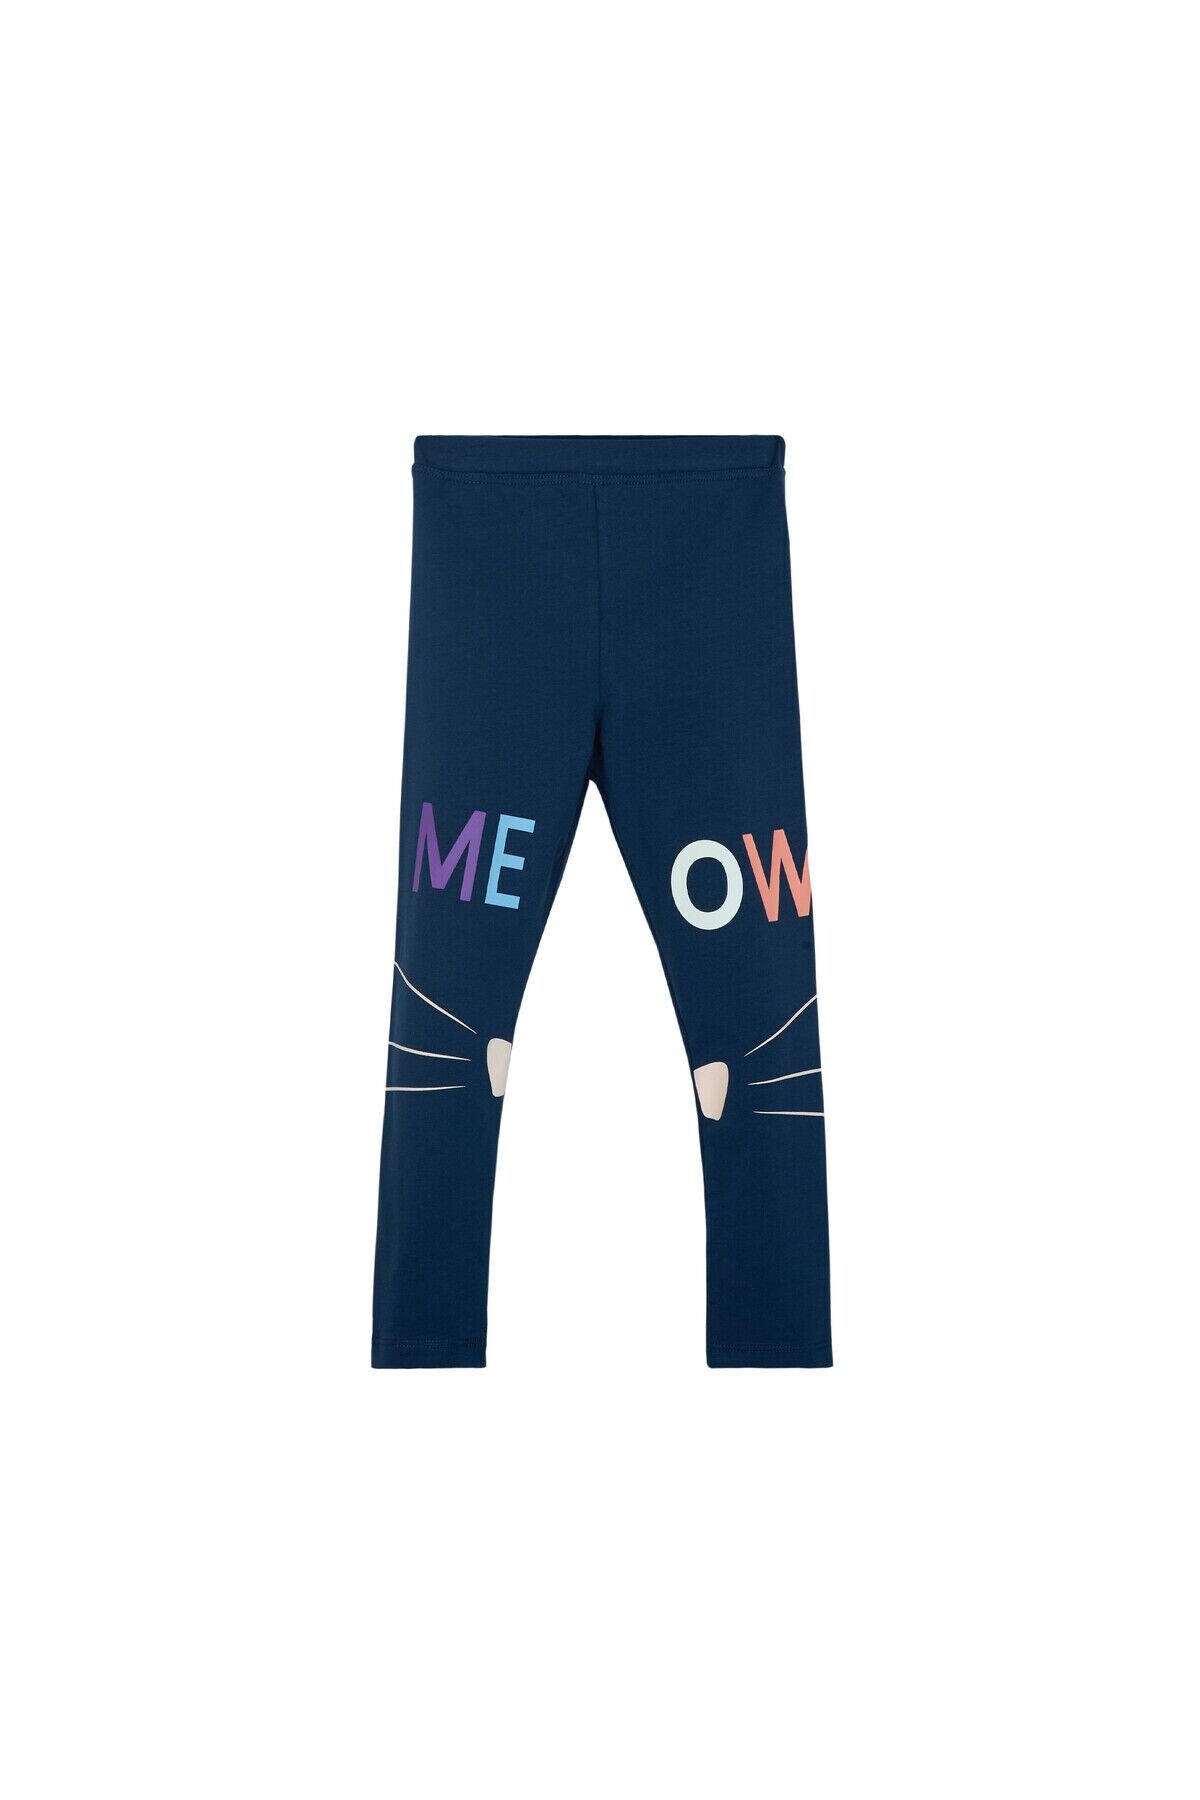 NWT H&M HM Size 14 Black Cat Kitty Kitten Face Leggings Jeggings Pants |  eBay